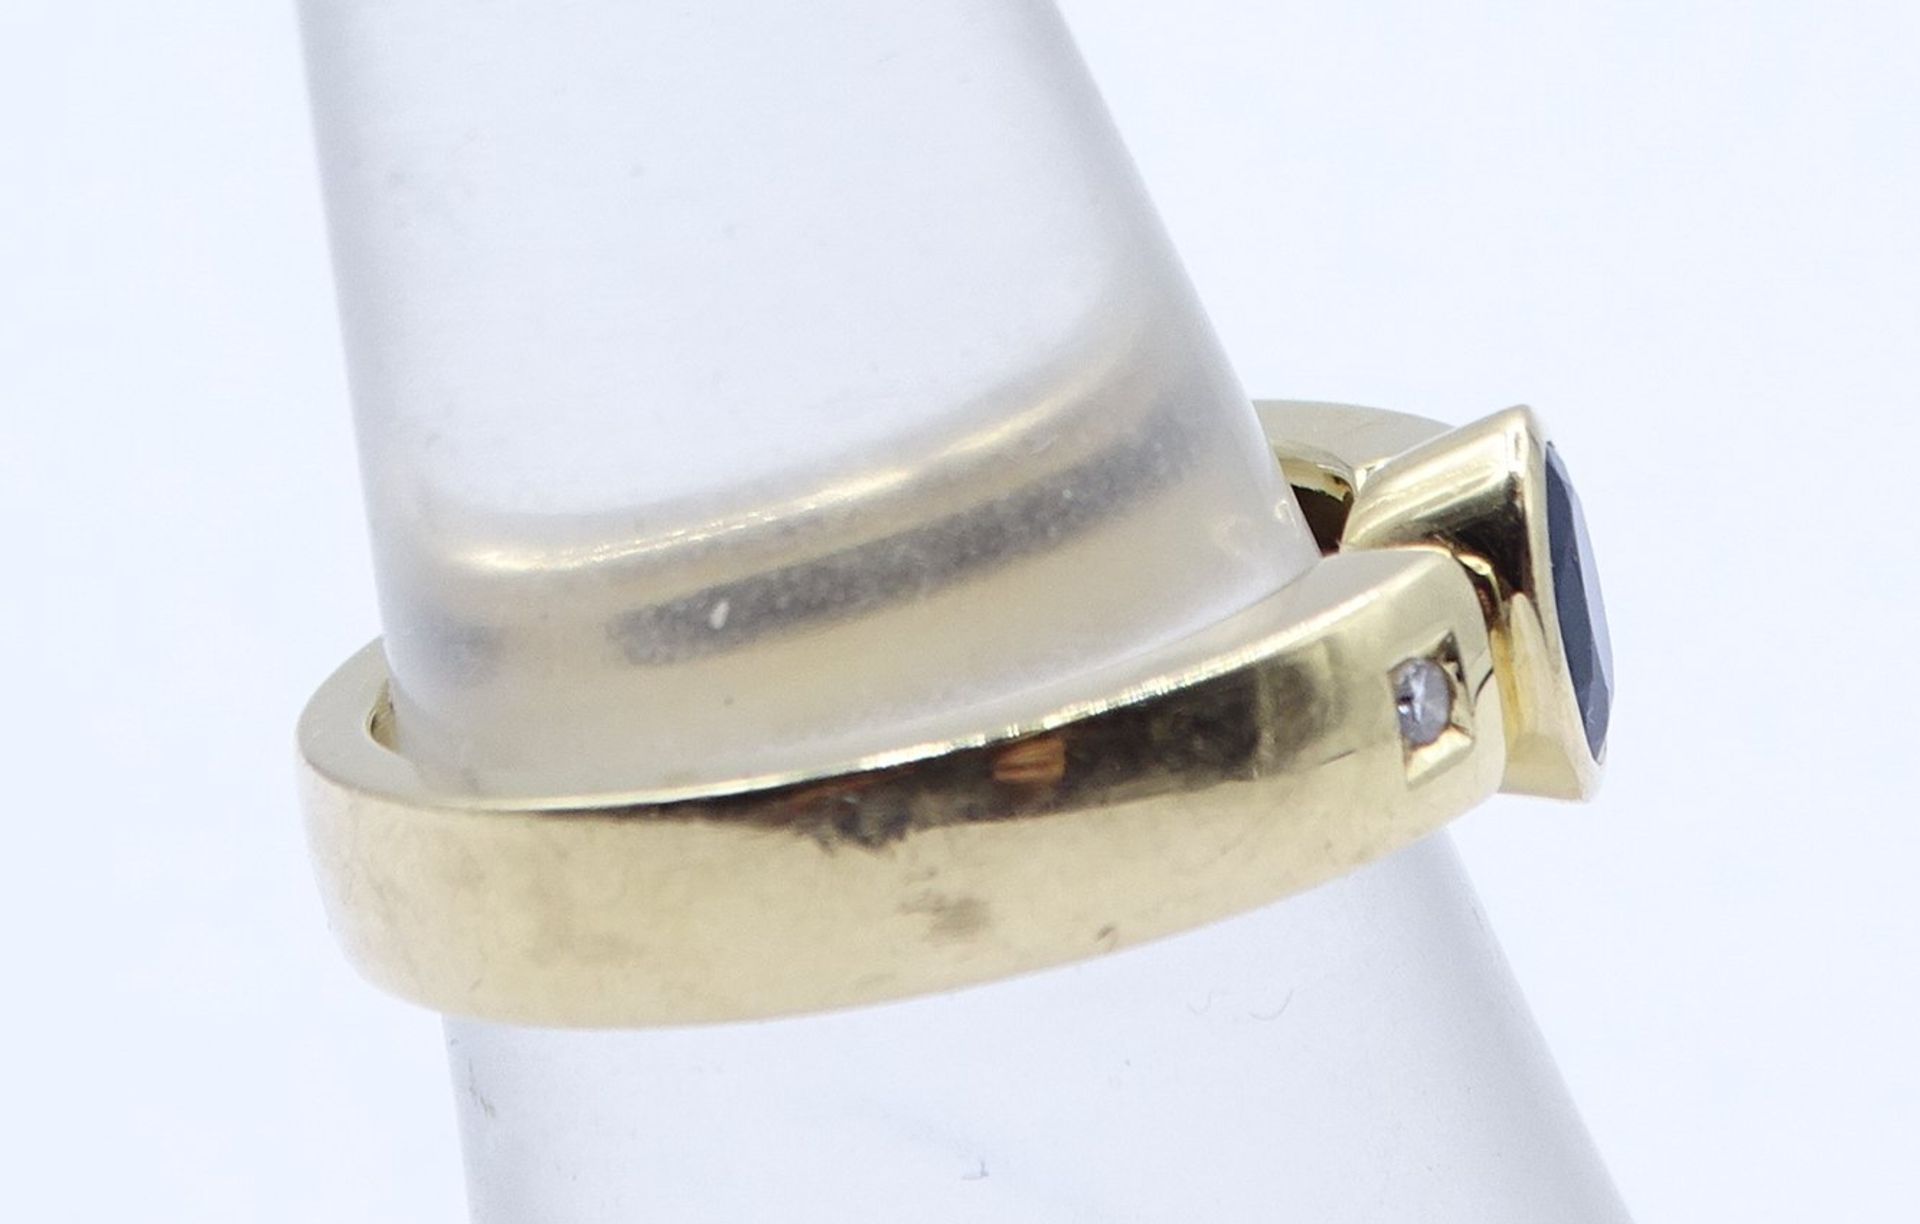 750er-Goldring mit 2 Brillanten von zus. 0,03 ct. und oval facettiertem Saphir, RG 54/55, 7,52 gr., - Bild 3 aus 7